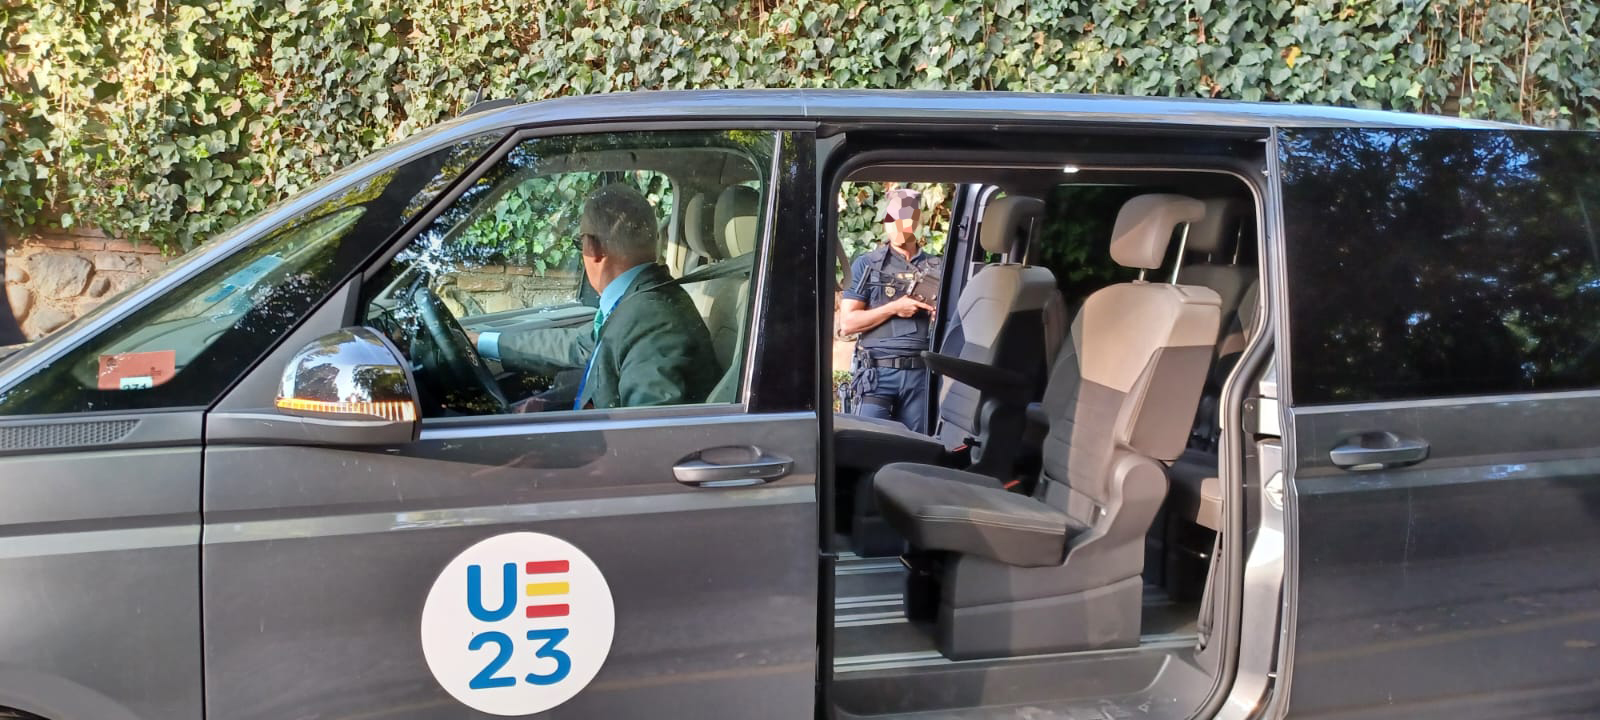 Vehículo oficial, con puerta abierta, con logo de la presidencia española de la unión europea.